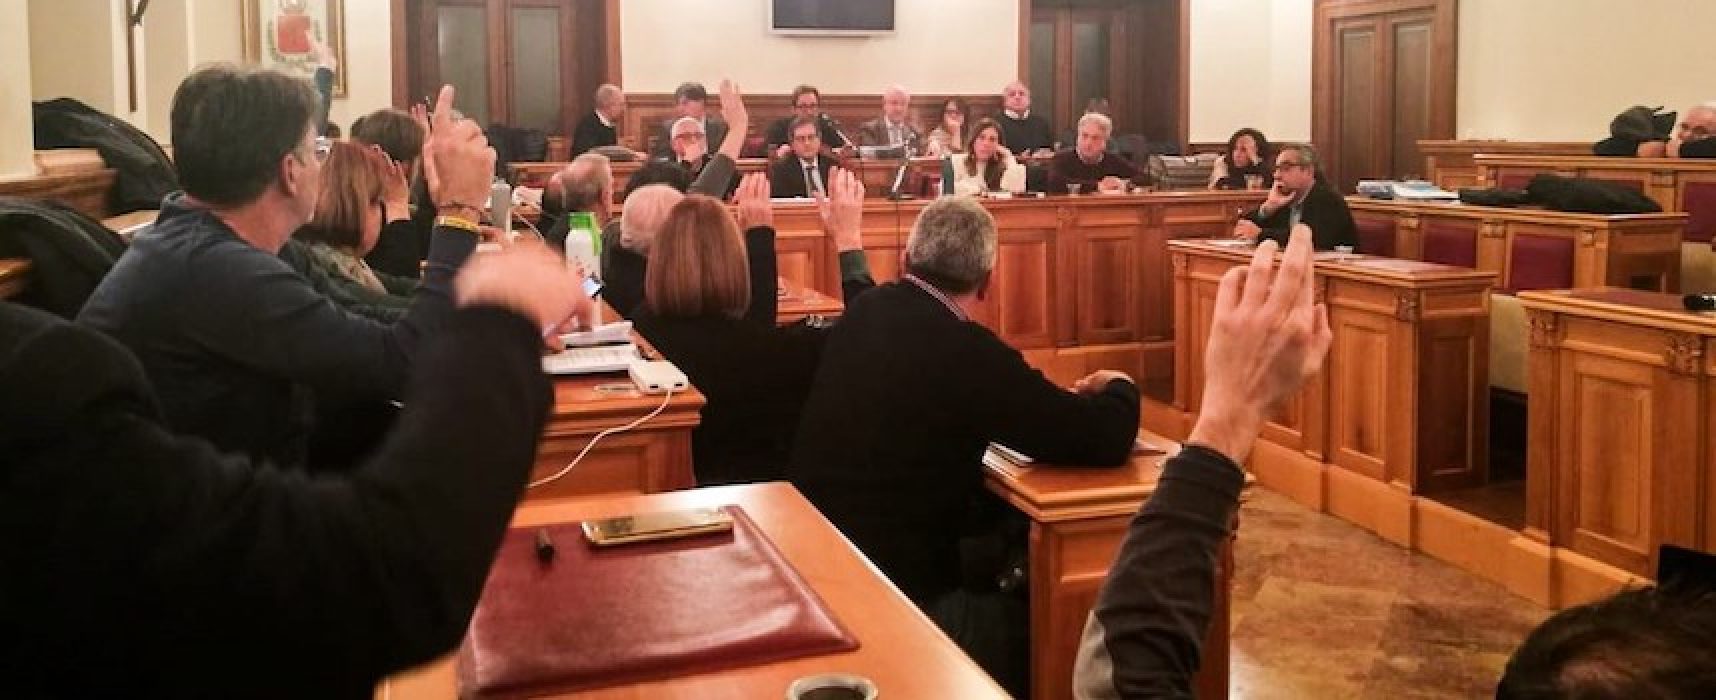 Consiglio comunale, maggioranza riapprova Dup con parte dell’opposizione fuori dall’aula